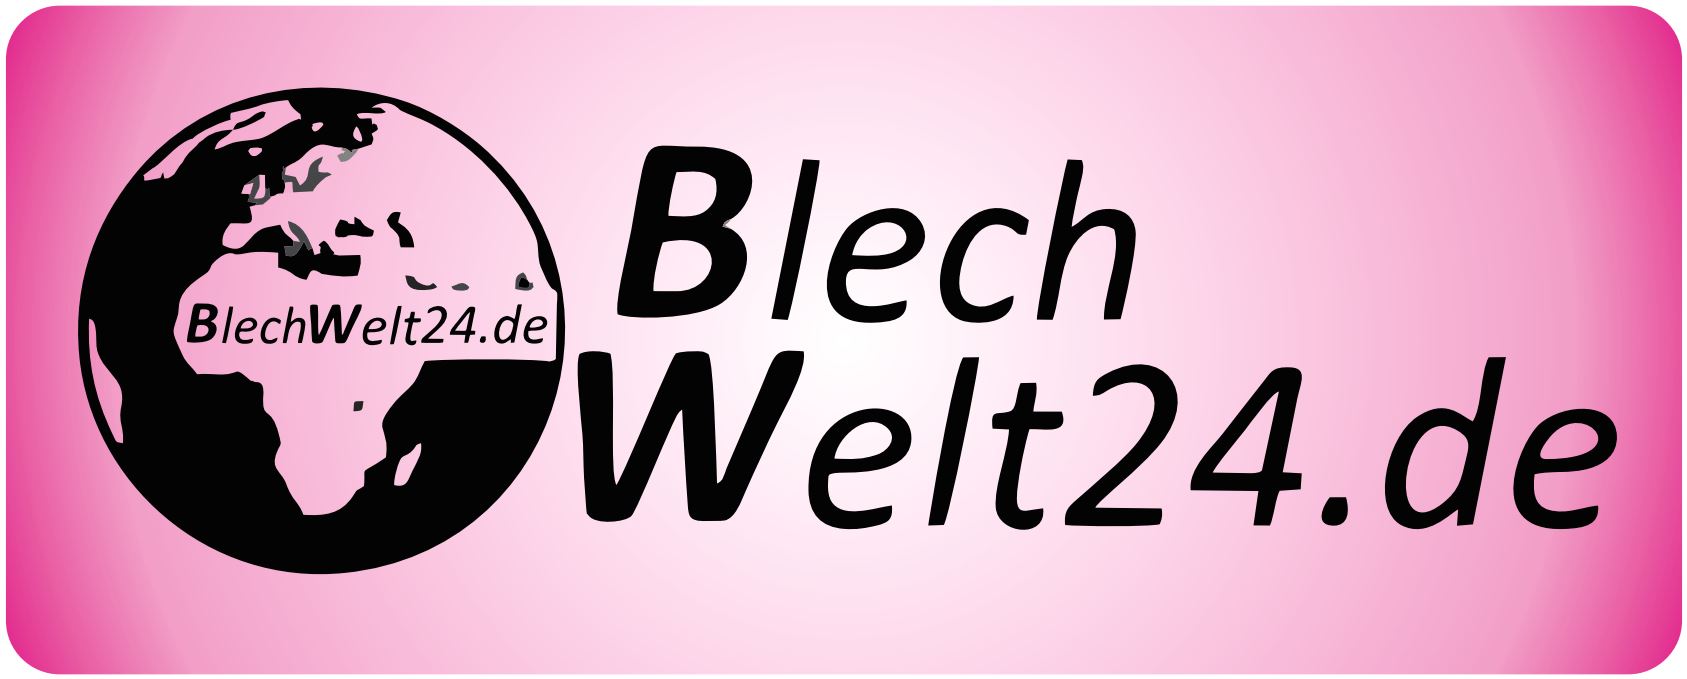 BlechWelt24